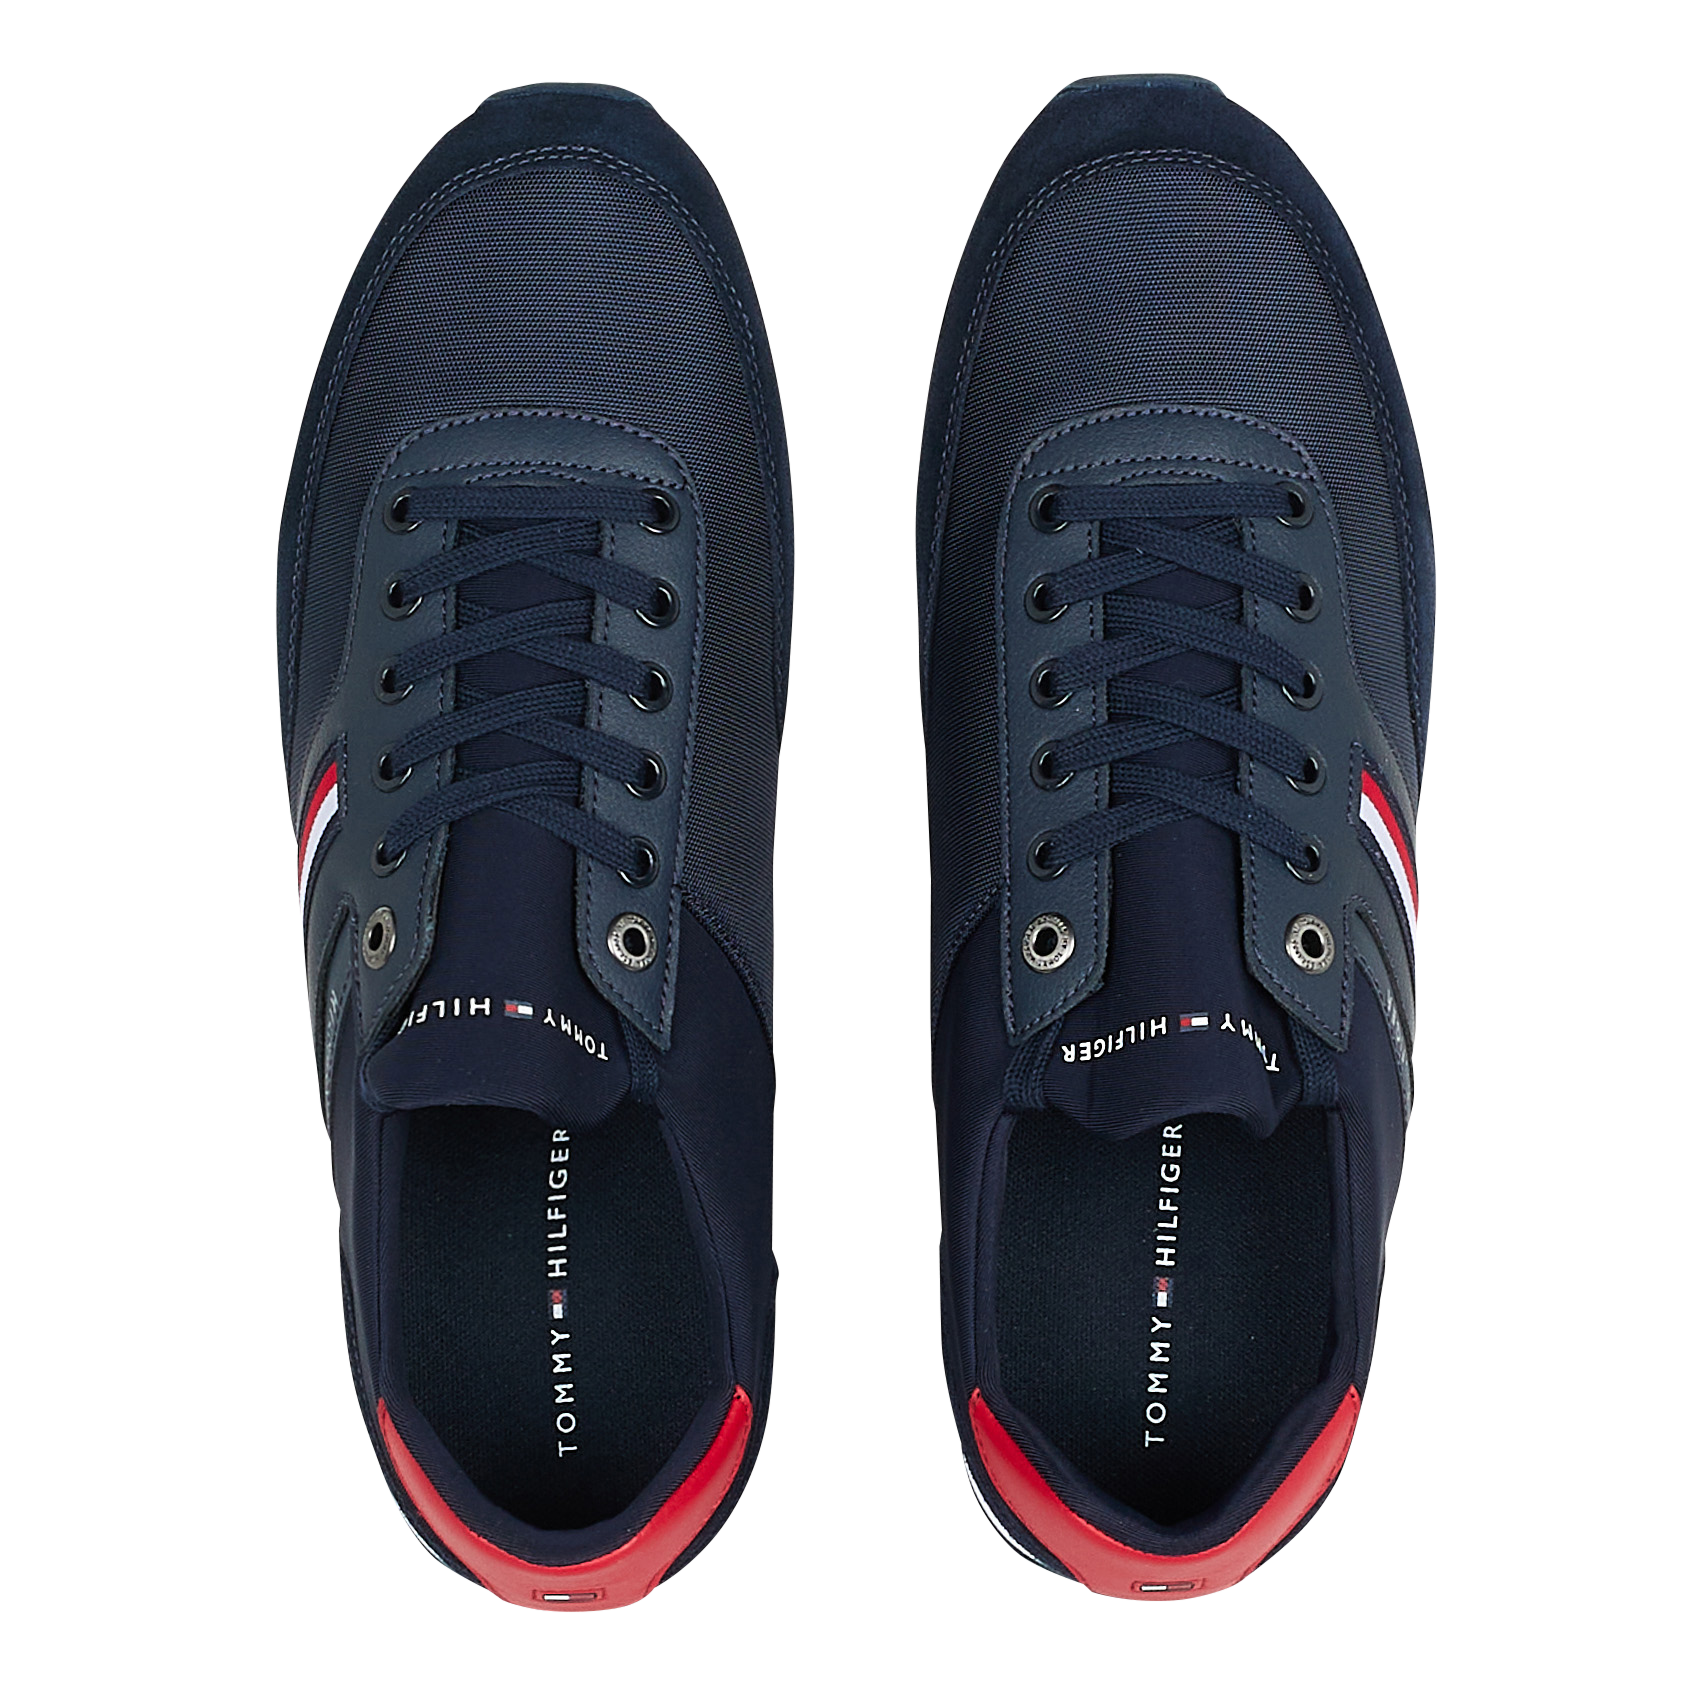 Sneakers Coton Tommy Hilfiger pour homme en coloris Bleu Homme Chaussures Baskets Baskets basses 